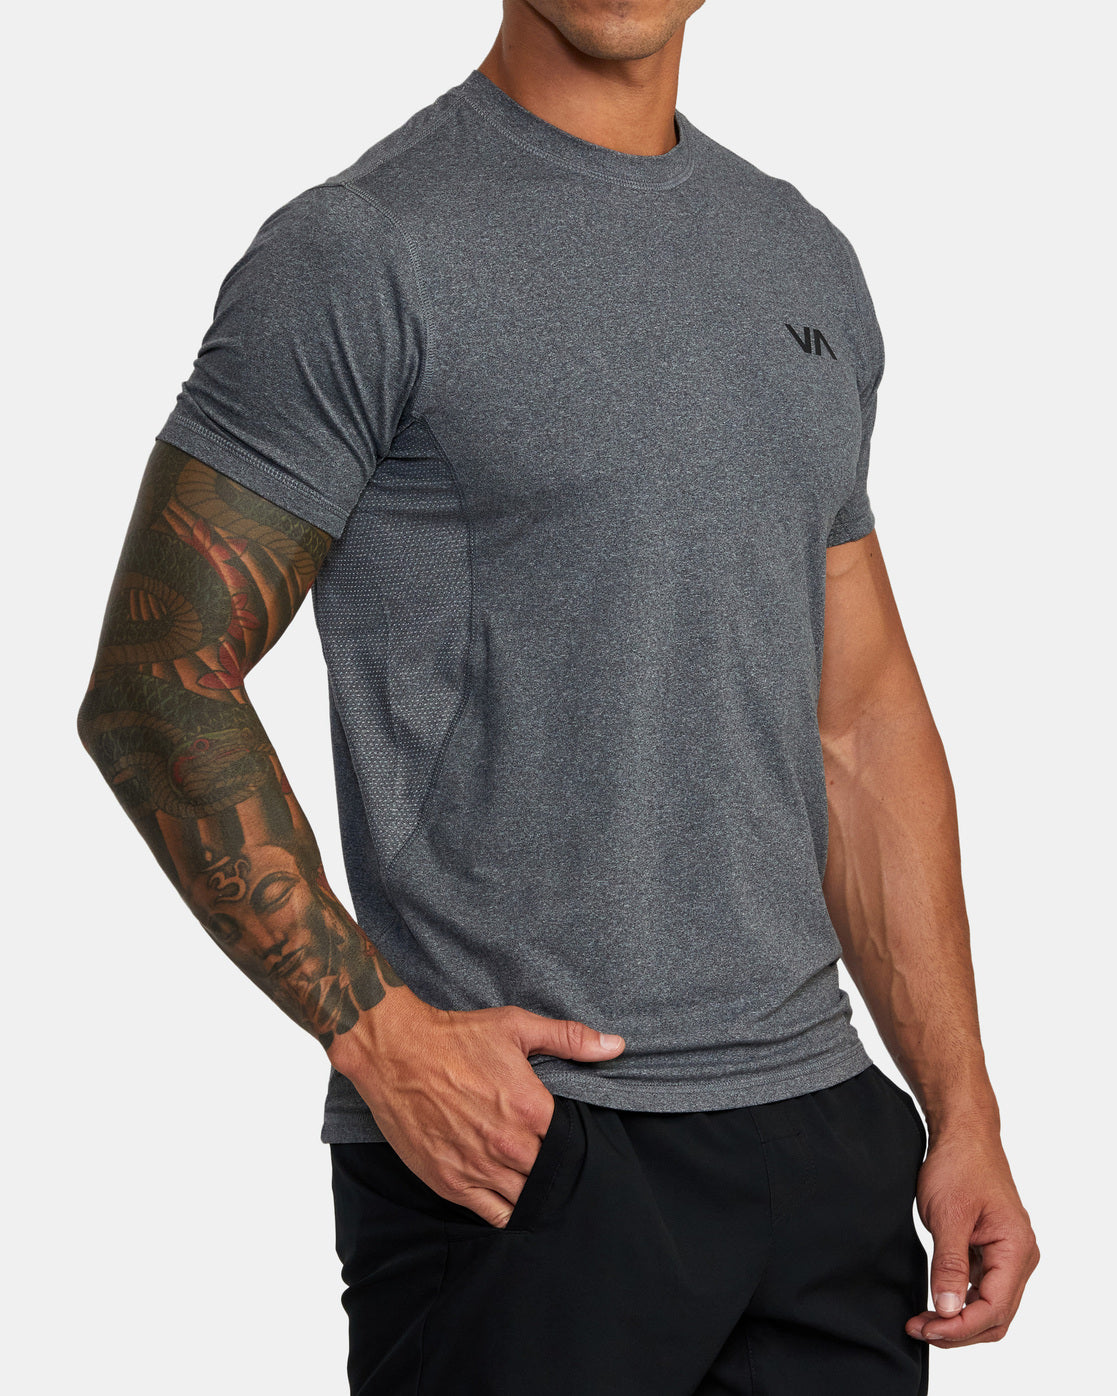 T-shirt technique Rvca VA Sport Vent - Charcoal Heather | Collection_Zalando | Nouveaux produits | Produits les plus récents | Produits les plus vendus | t-shirts pour hommes | T-shirts à manches courtes pour hommes | surfdevils.com